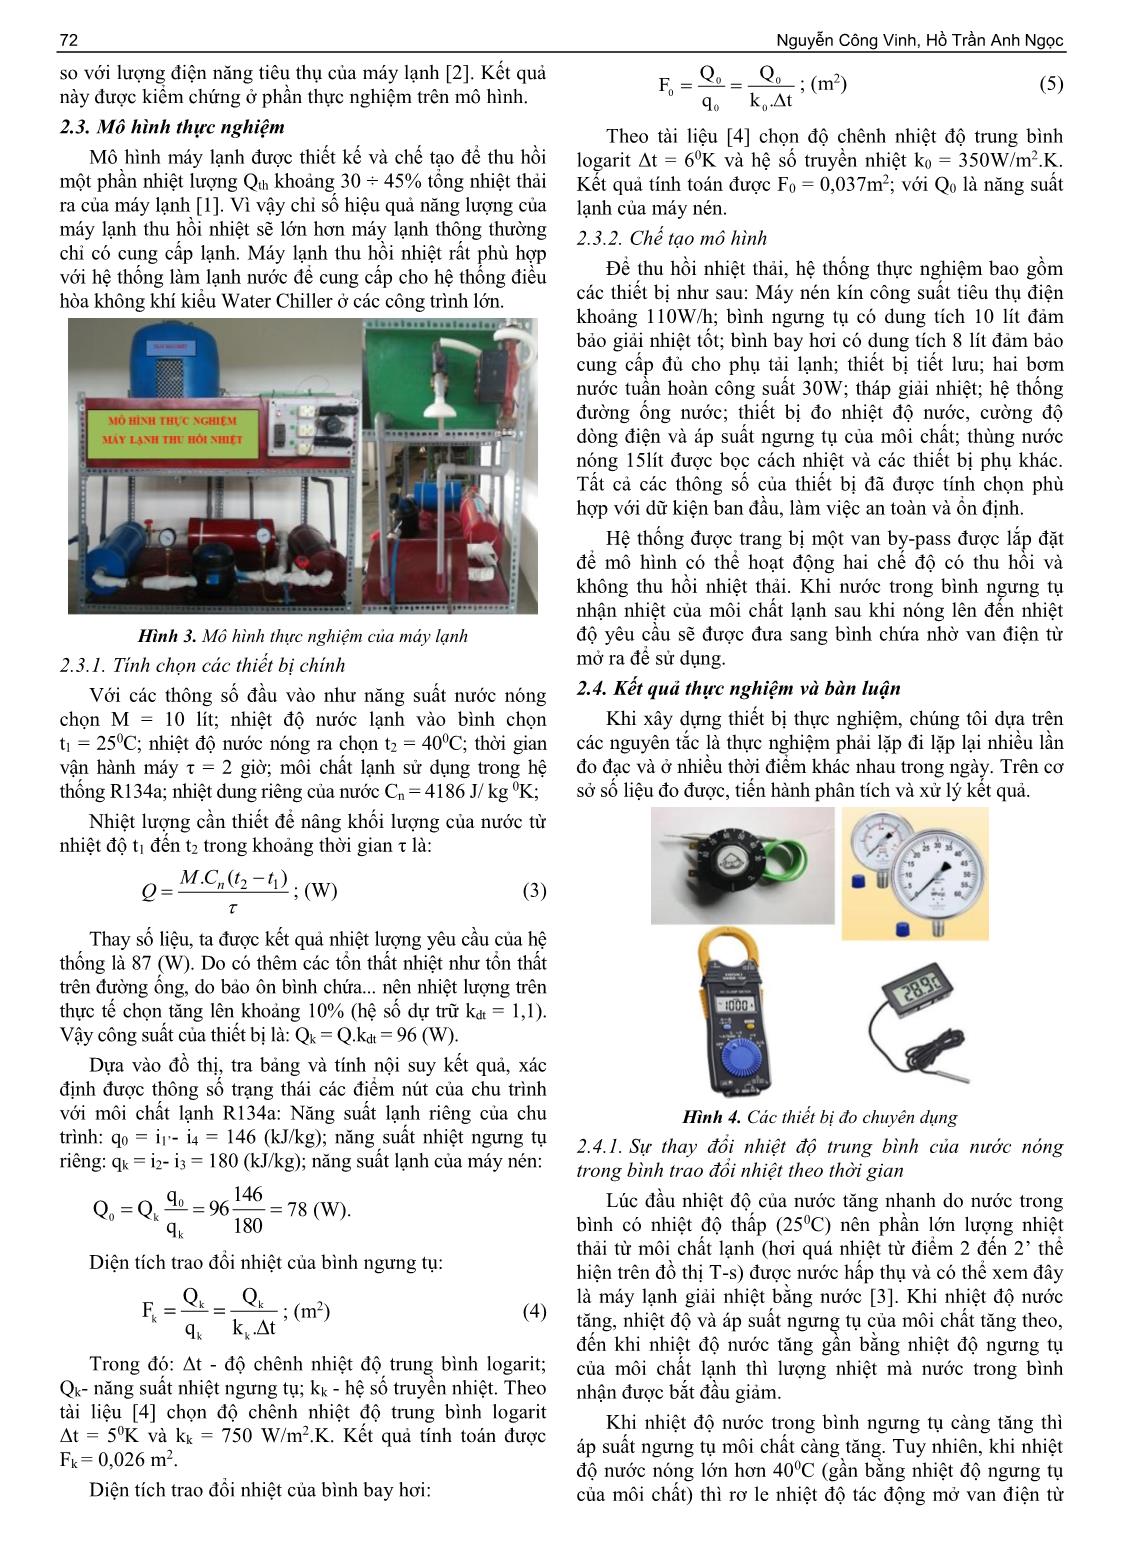 Nghiên cứu chế tạo và thử nghiệm máy lạnh thu hồi nhiệt để cung cấp đồng thời nhiệt - lạnh trang 3